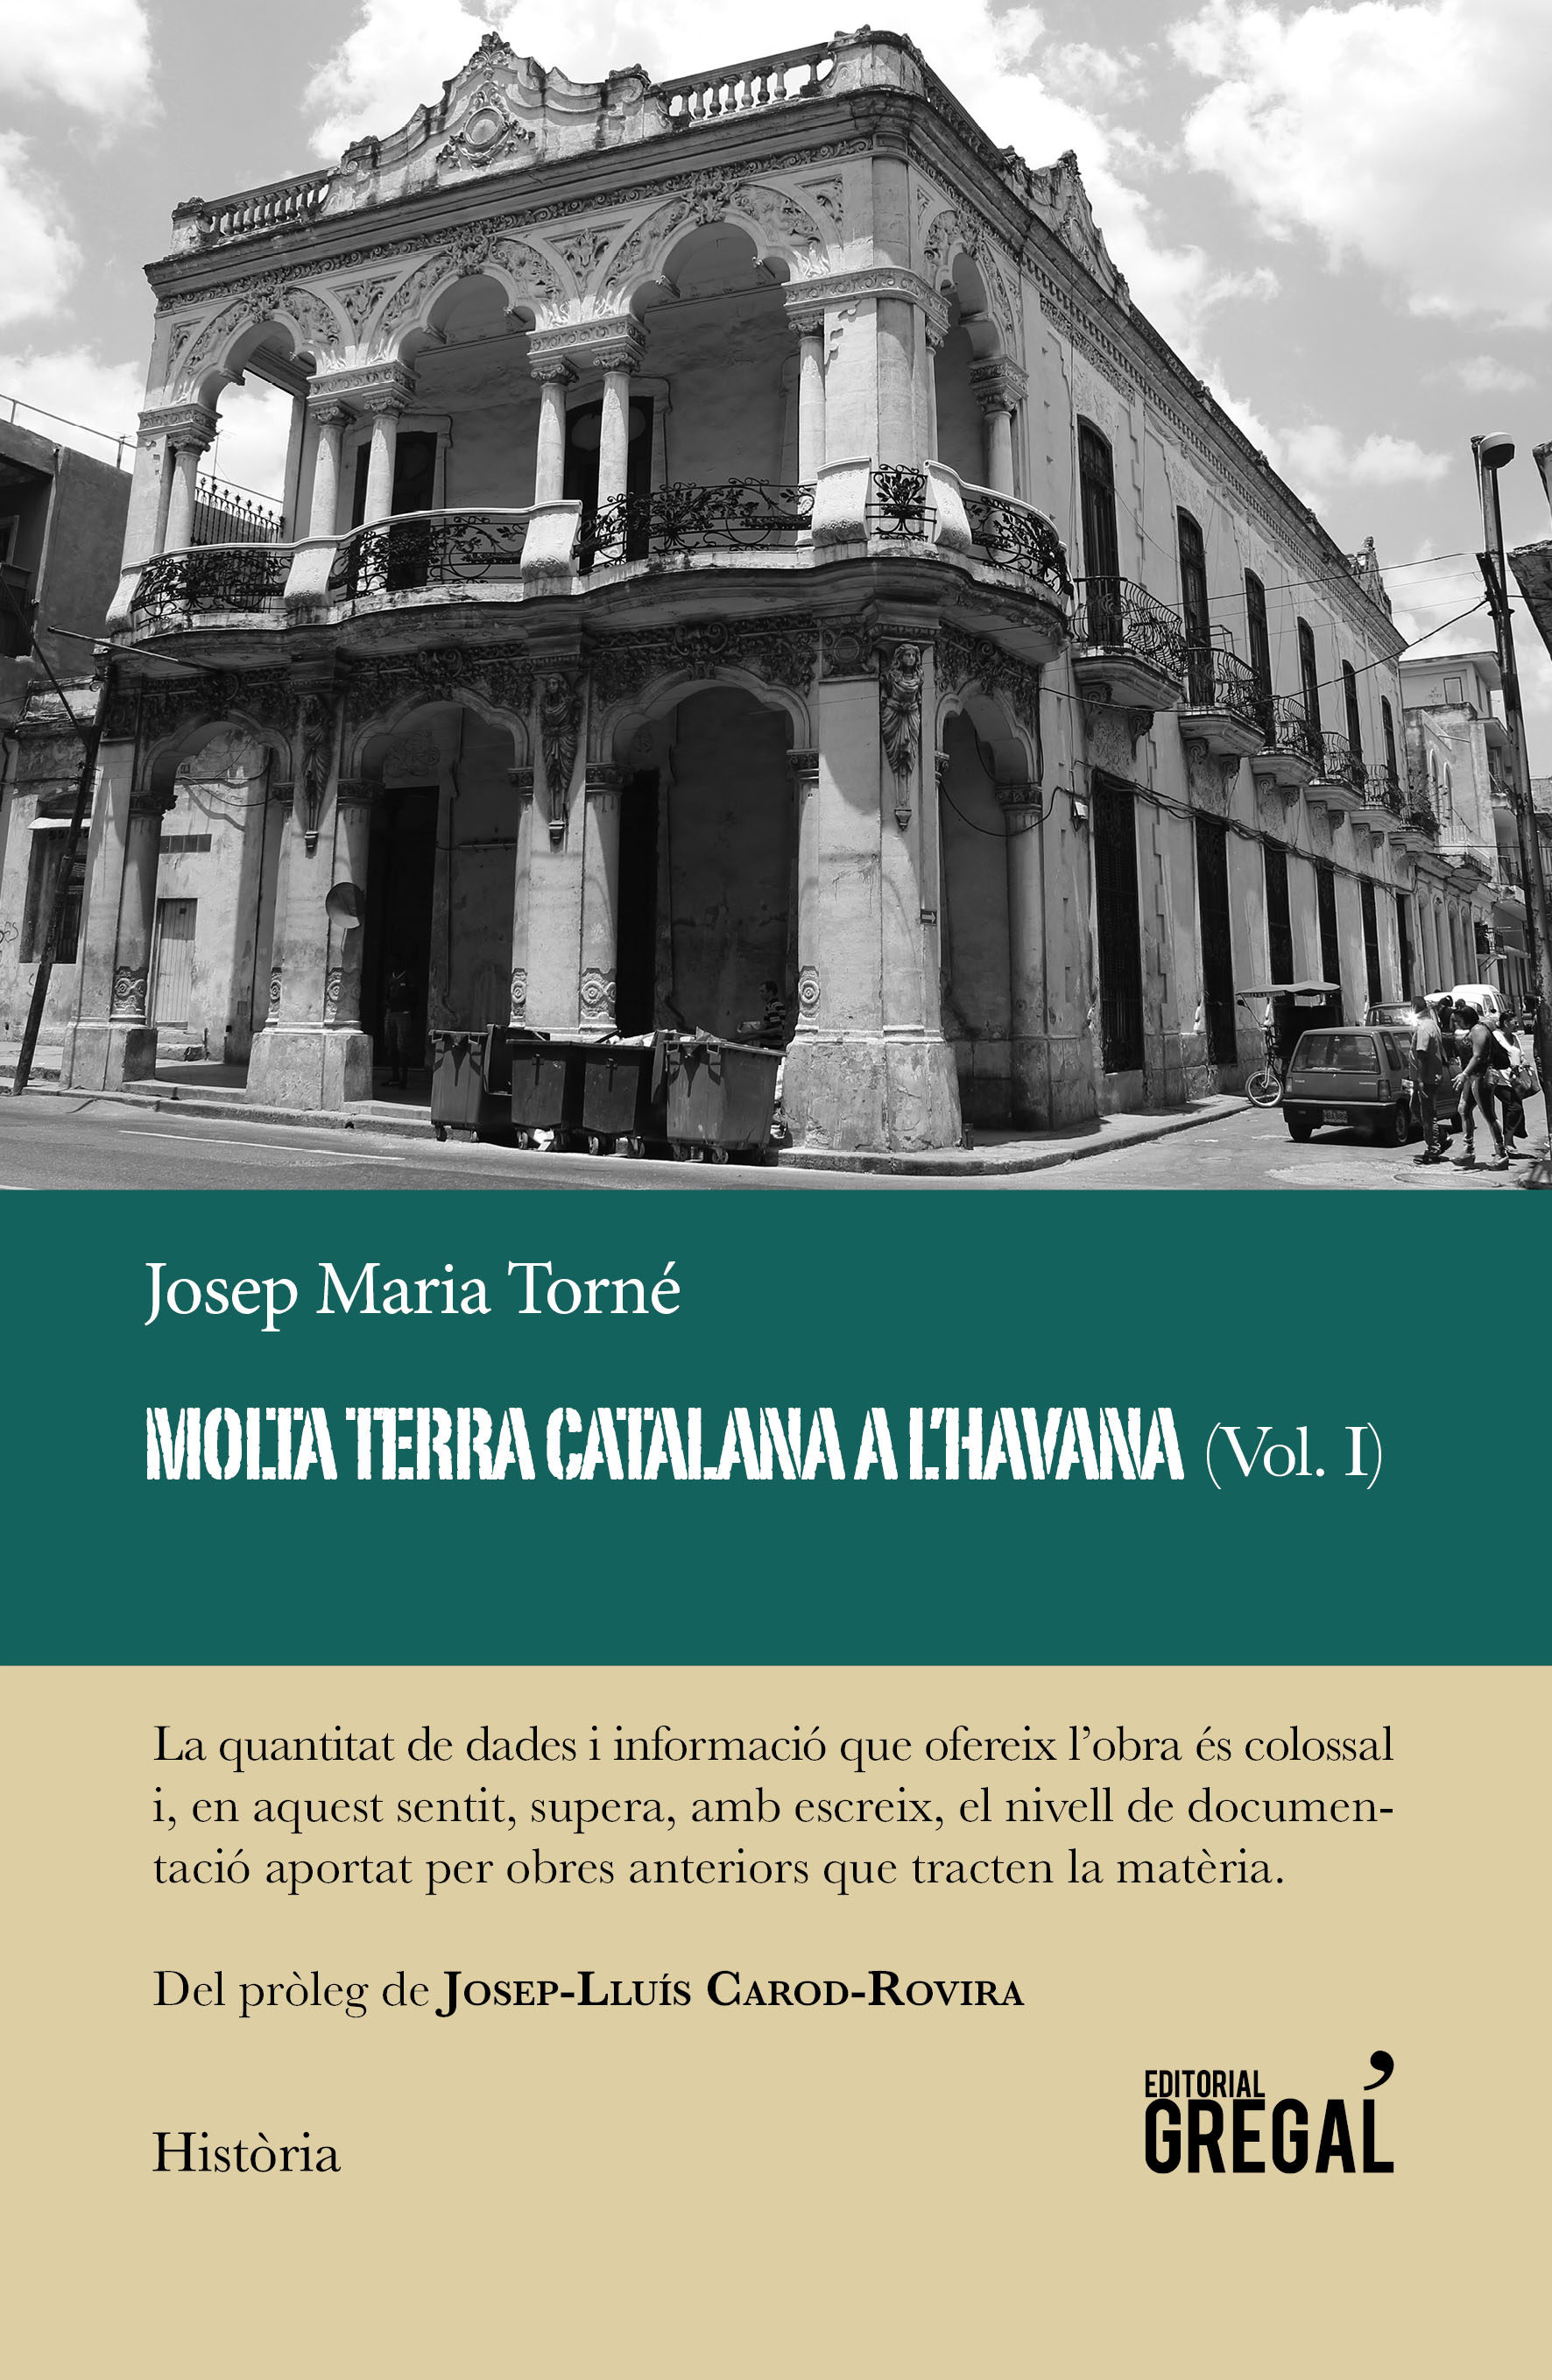 Presentació del llibre “Molta terra catalana a l’Havana (Vol.I)”, de Josep Mª Torné Pinyol